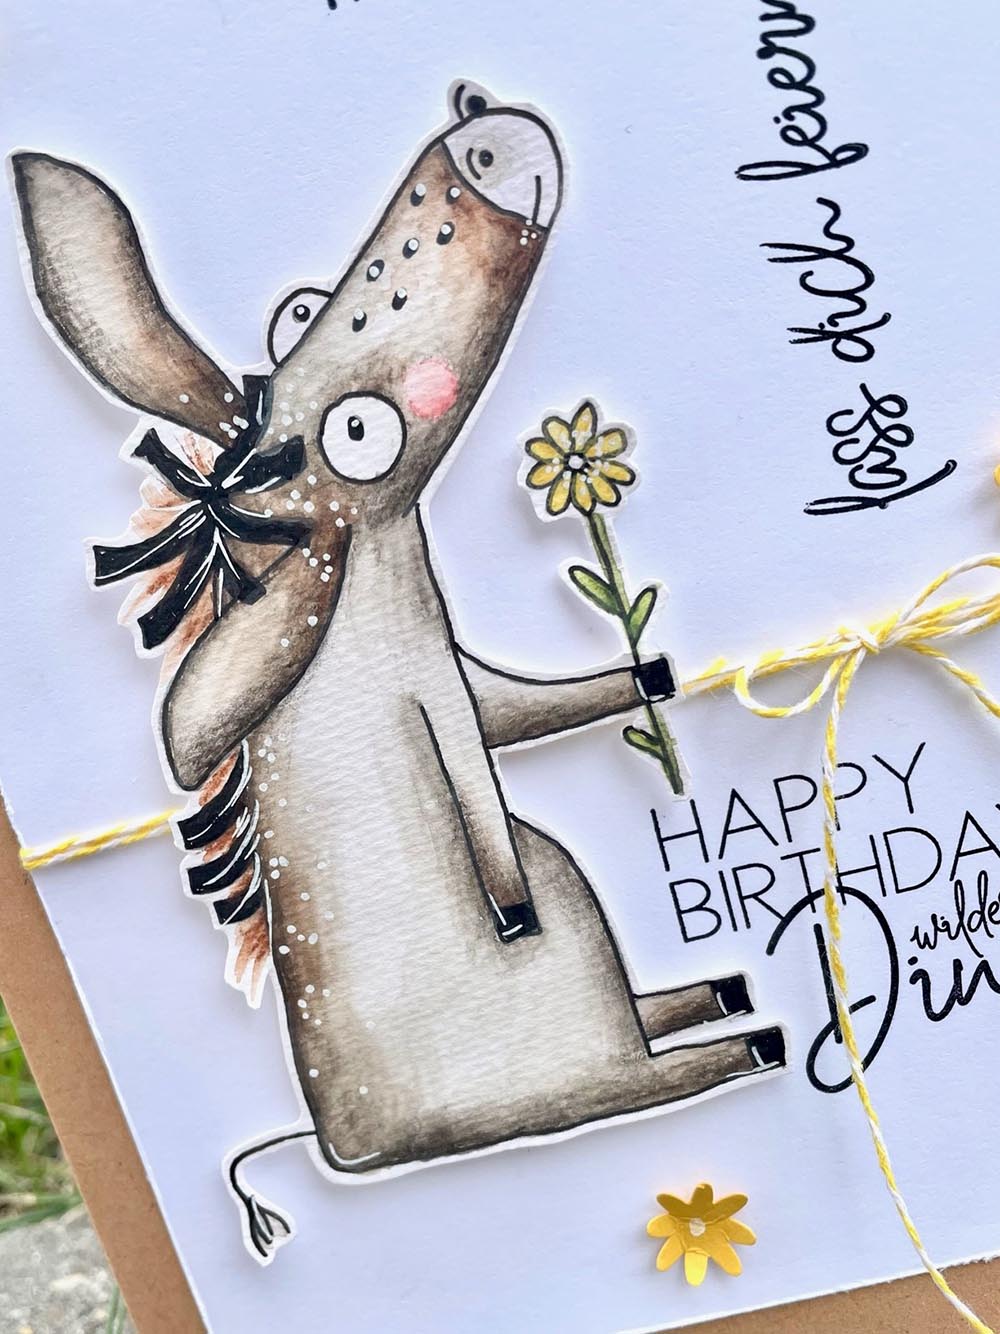 selbstgemachte Glückwunschkarte zum Geburtstag mit Esel von halfbird, der eine Blume in der Hand hält